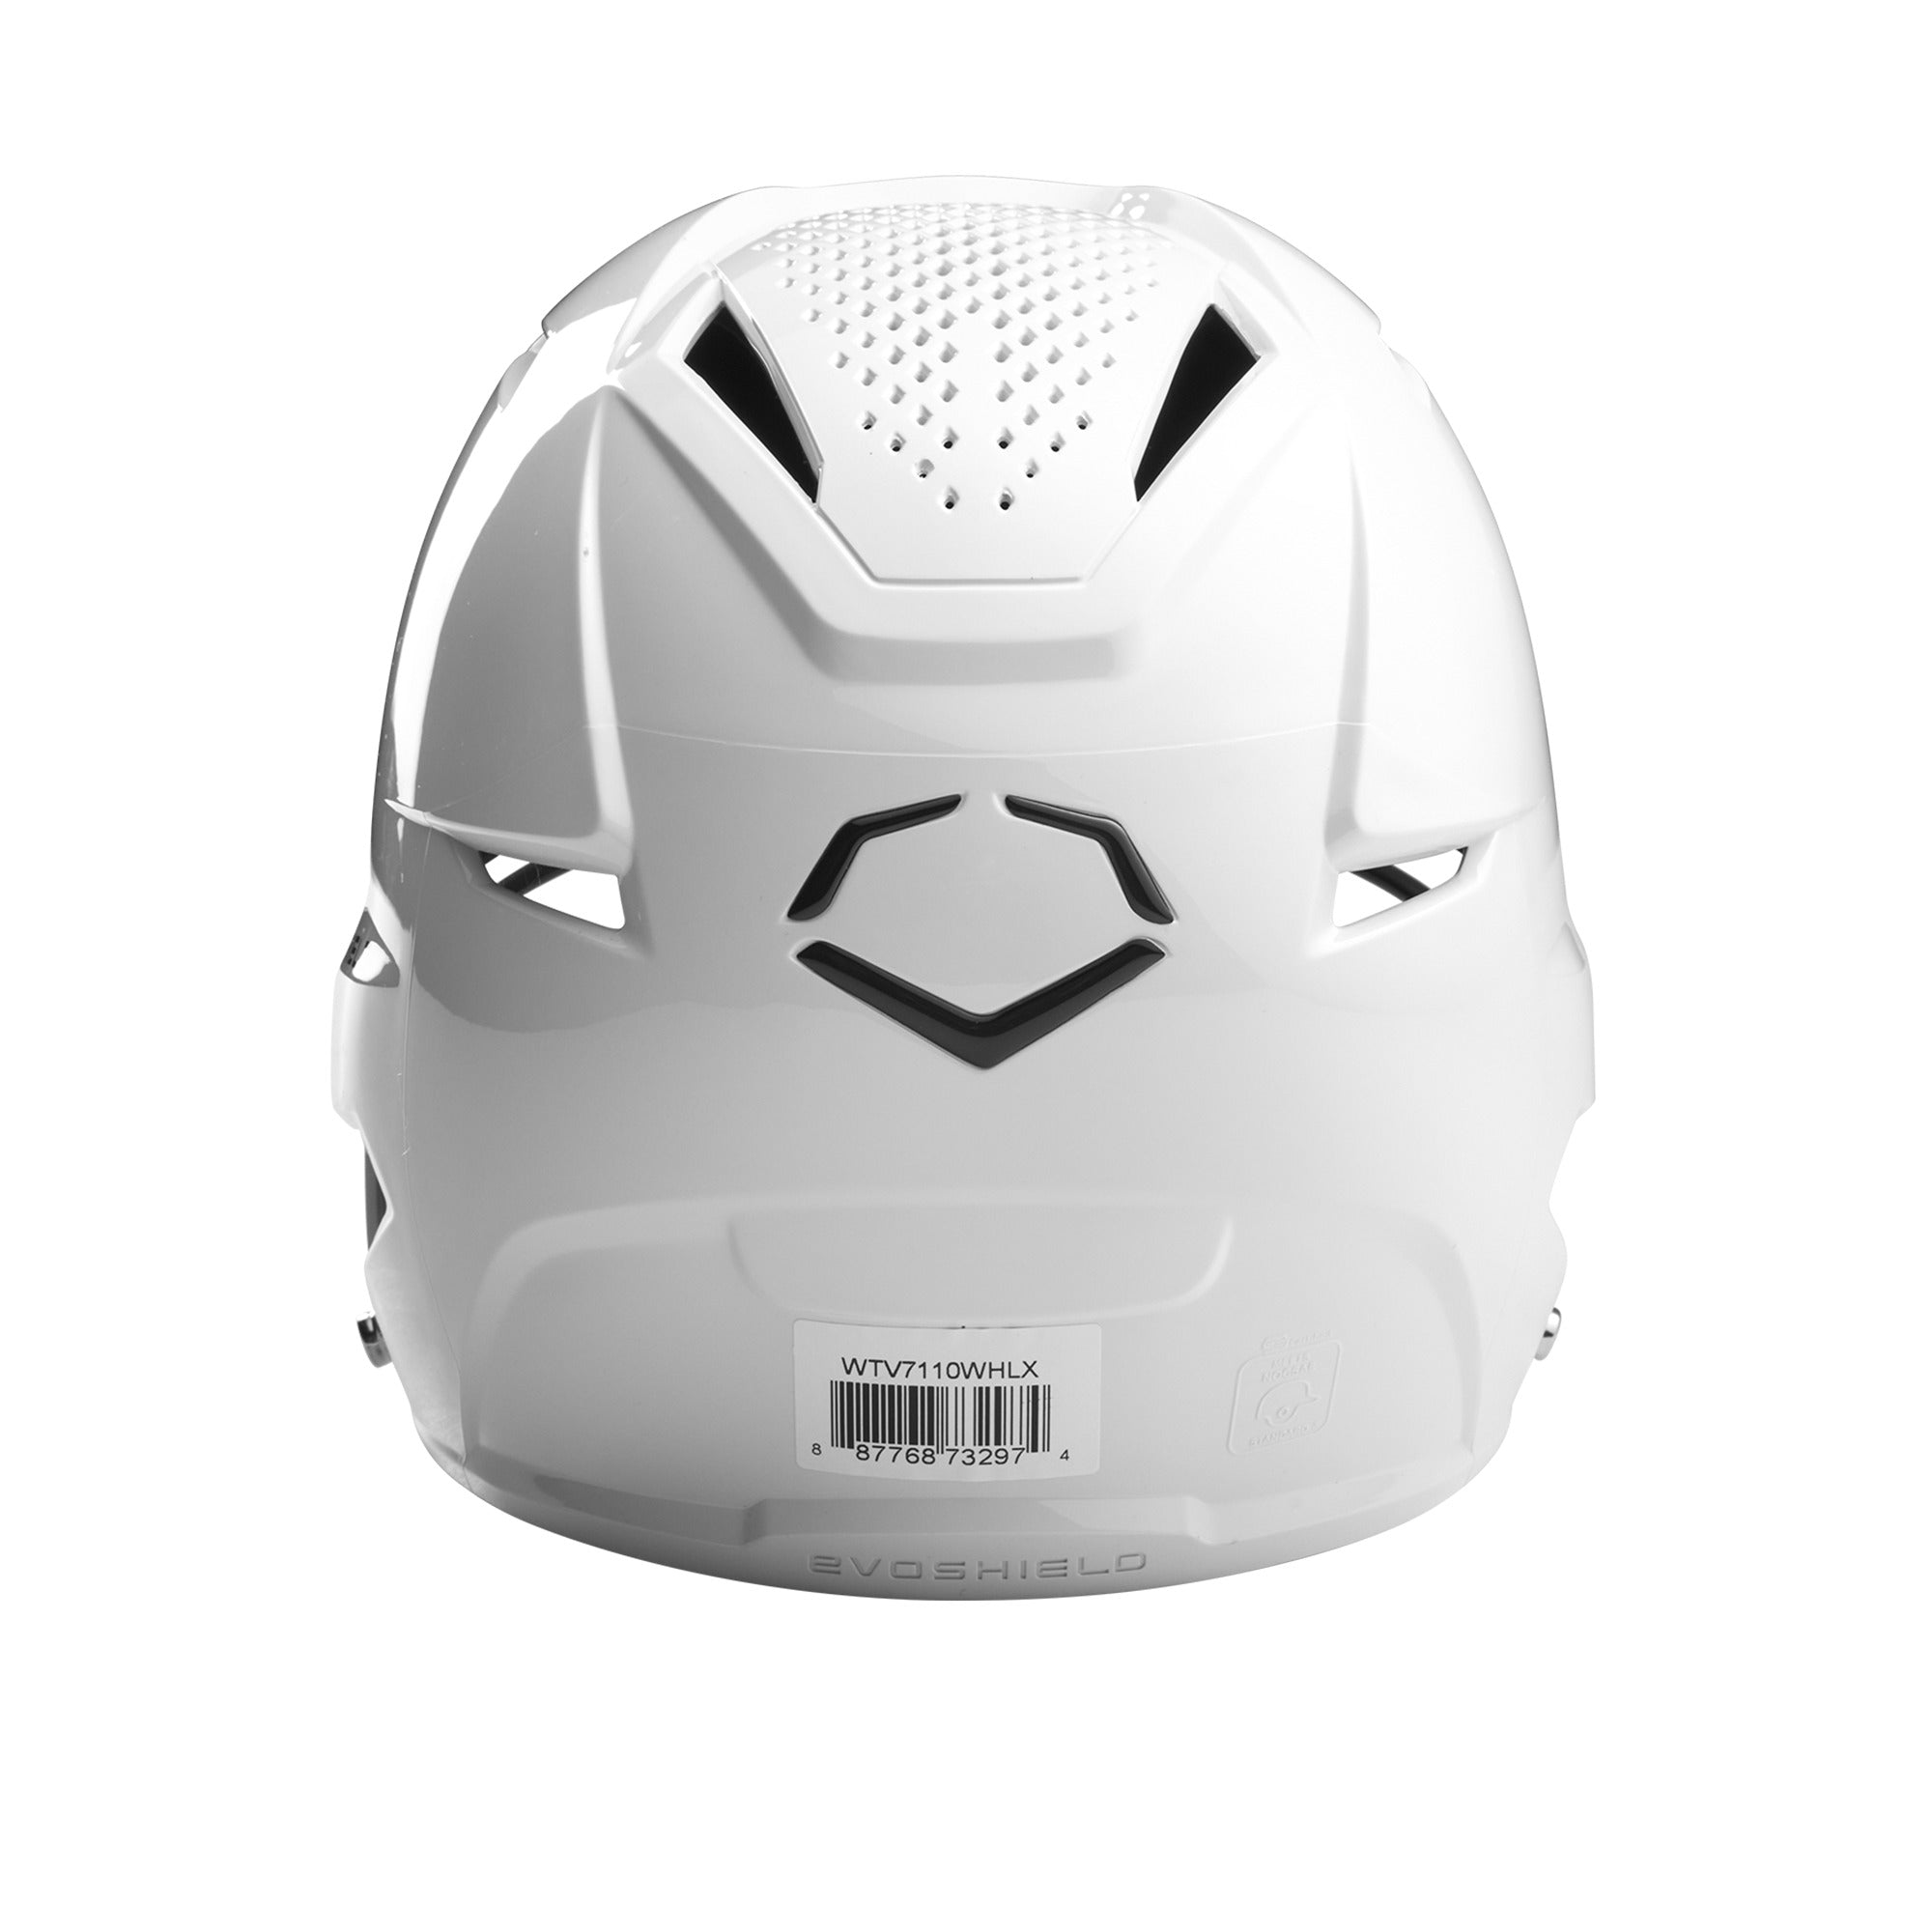 Evoshield XVT Batting Helmet w/ Mask Glossy